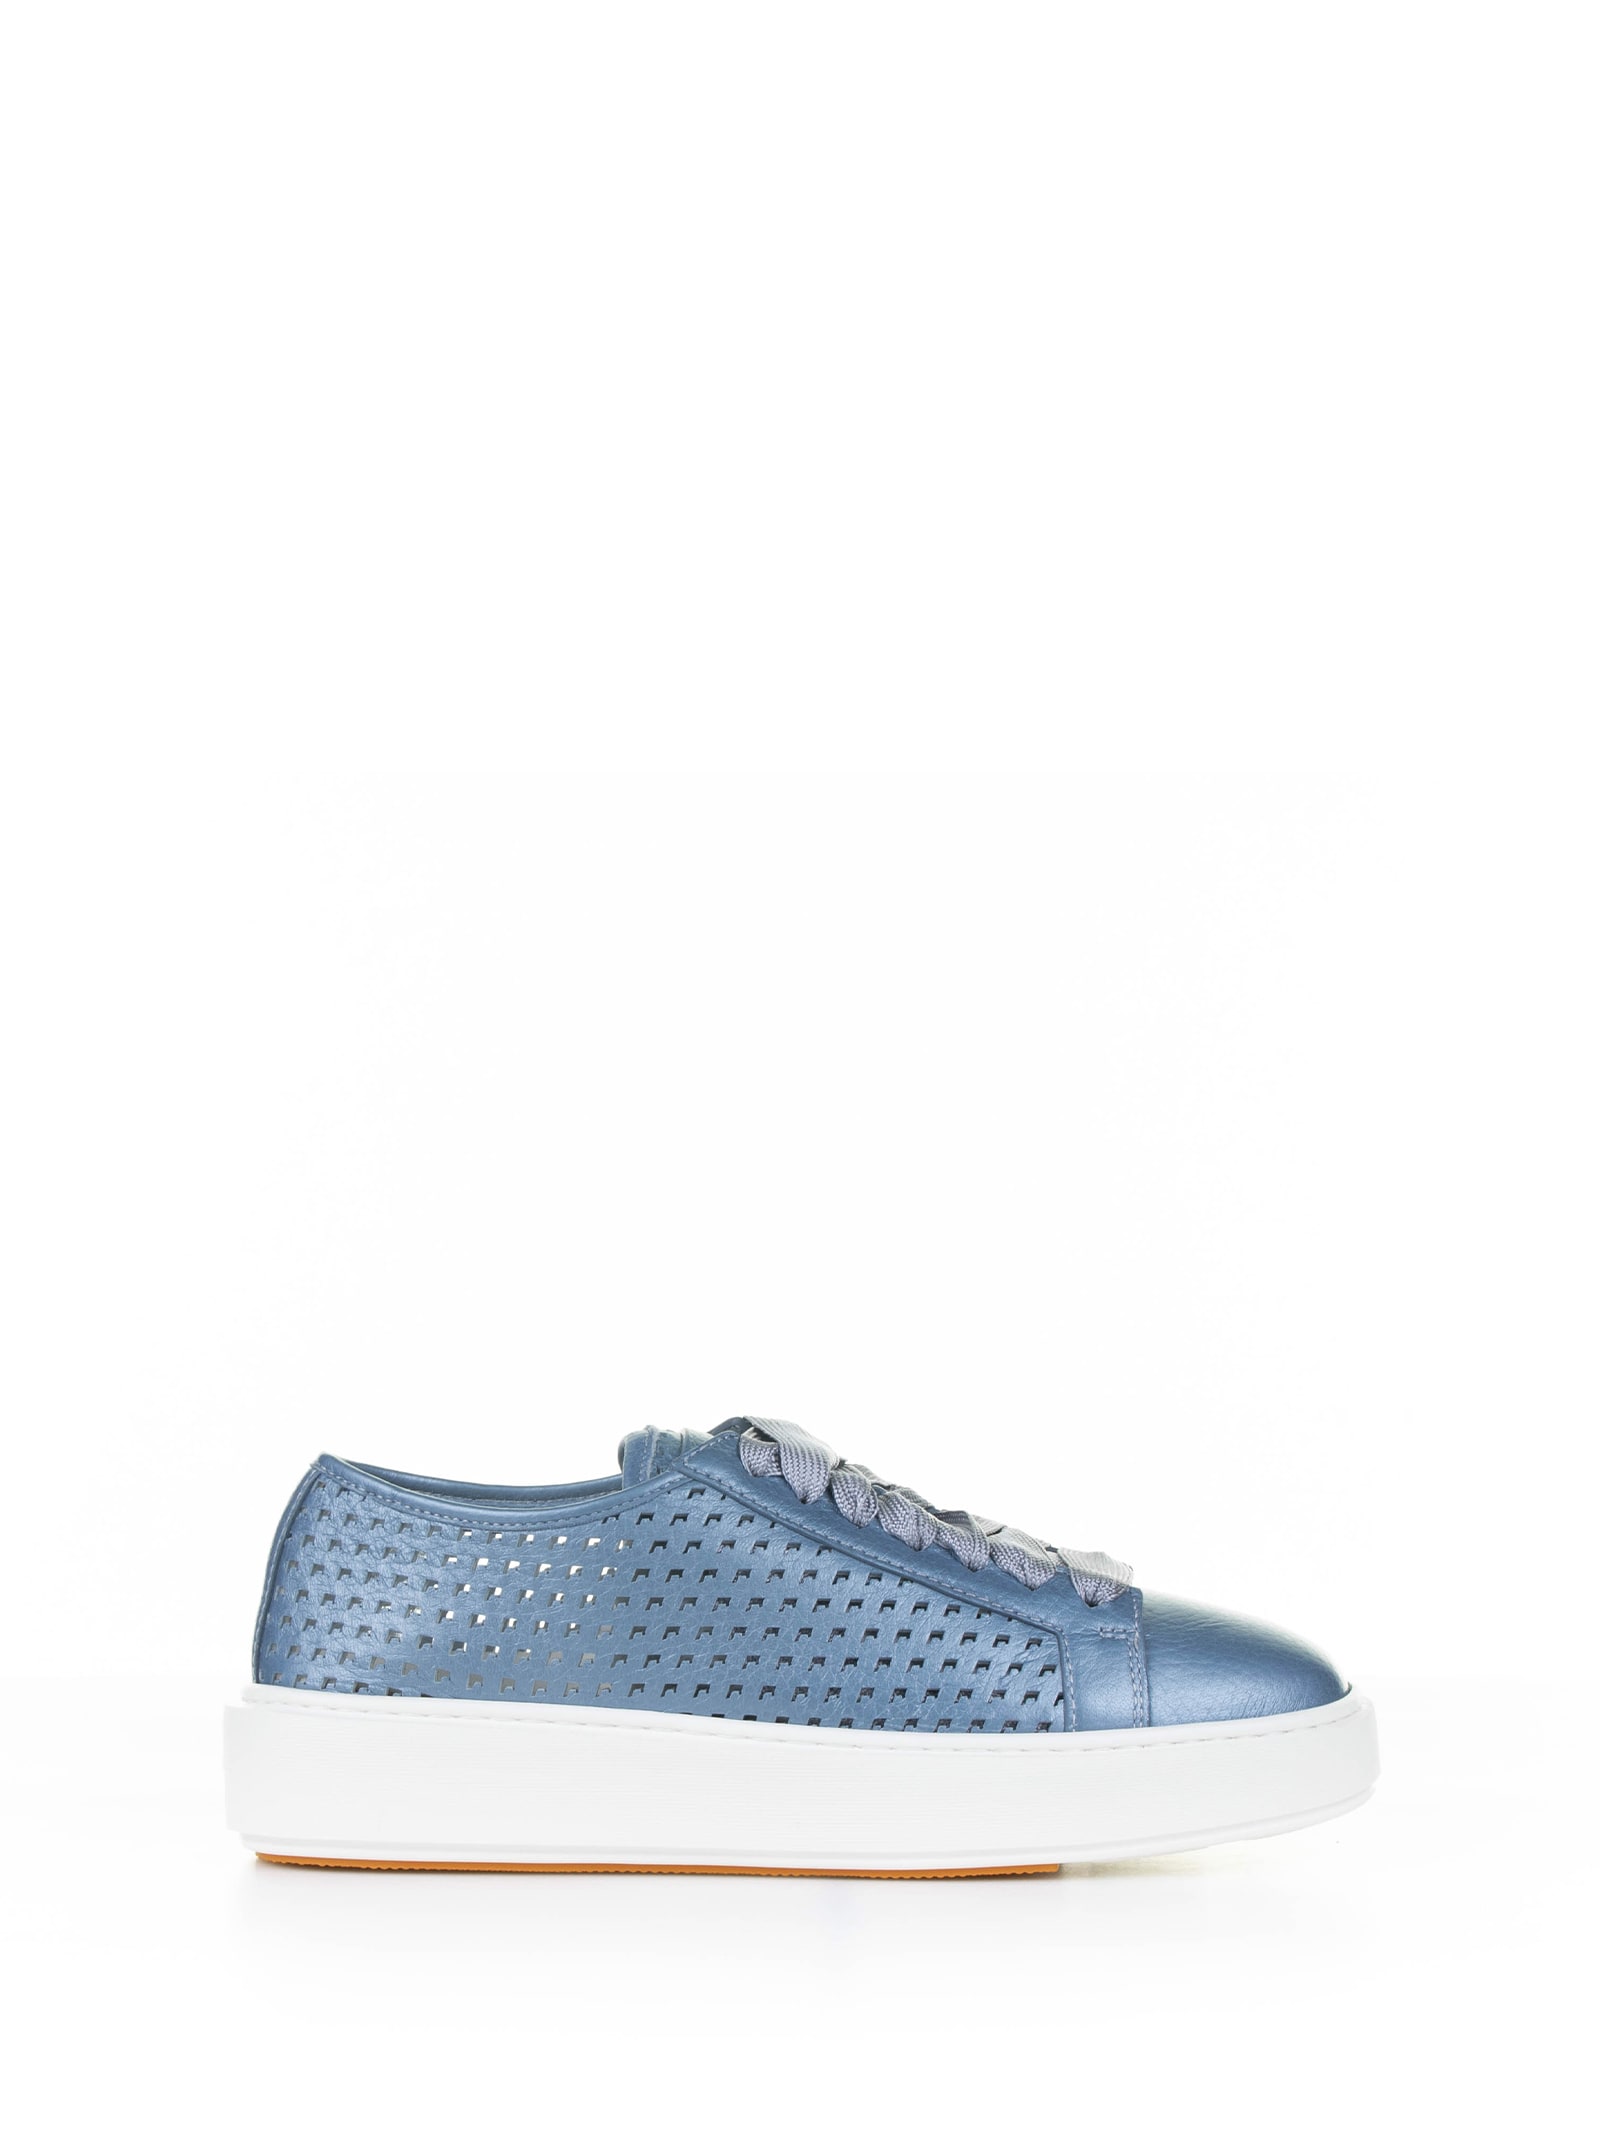 Santoni Sneakers In Light Blue